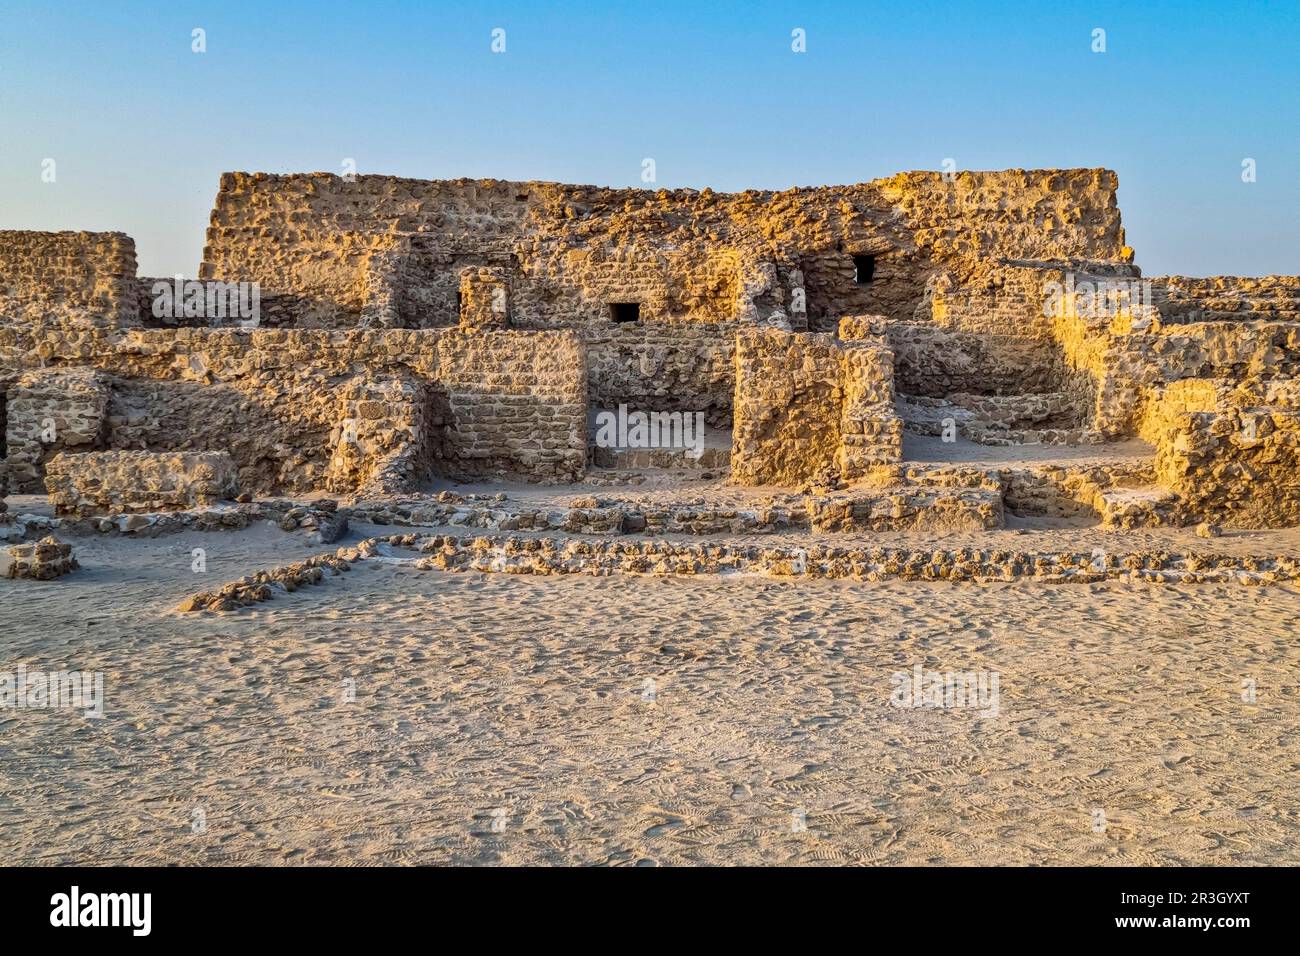 Site de l'UNESCO QAl'at al-Bahrain ou le fort de Bahreïn, Royaume de Bahreïn Banque D'Images